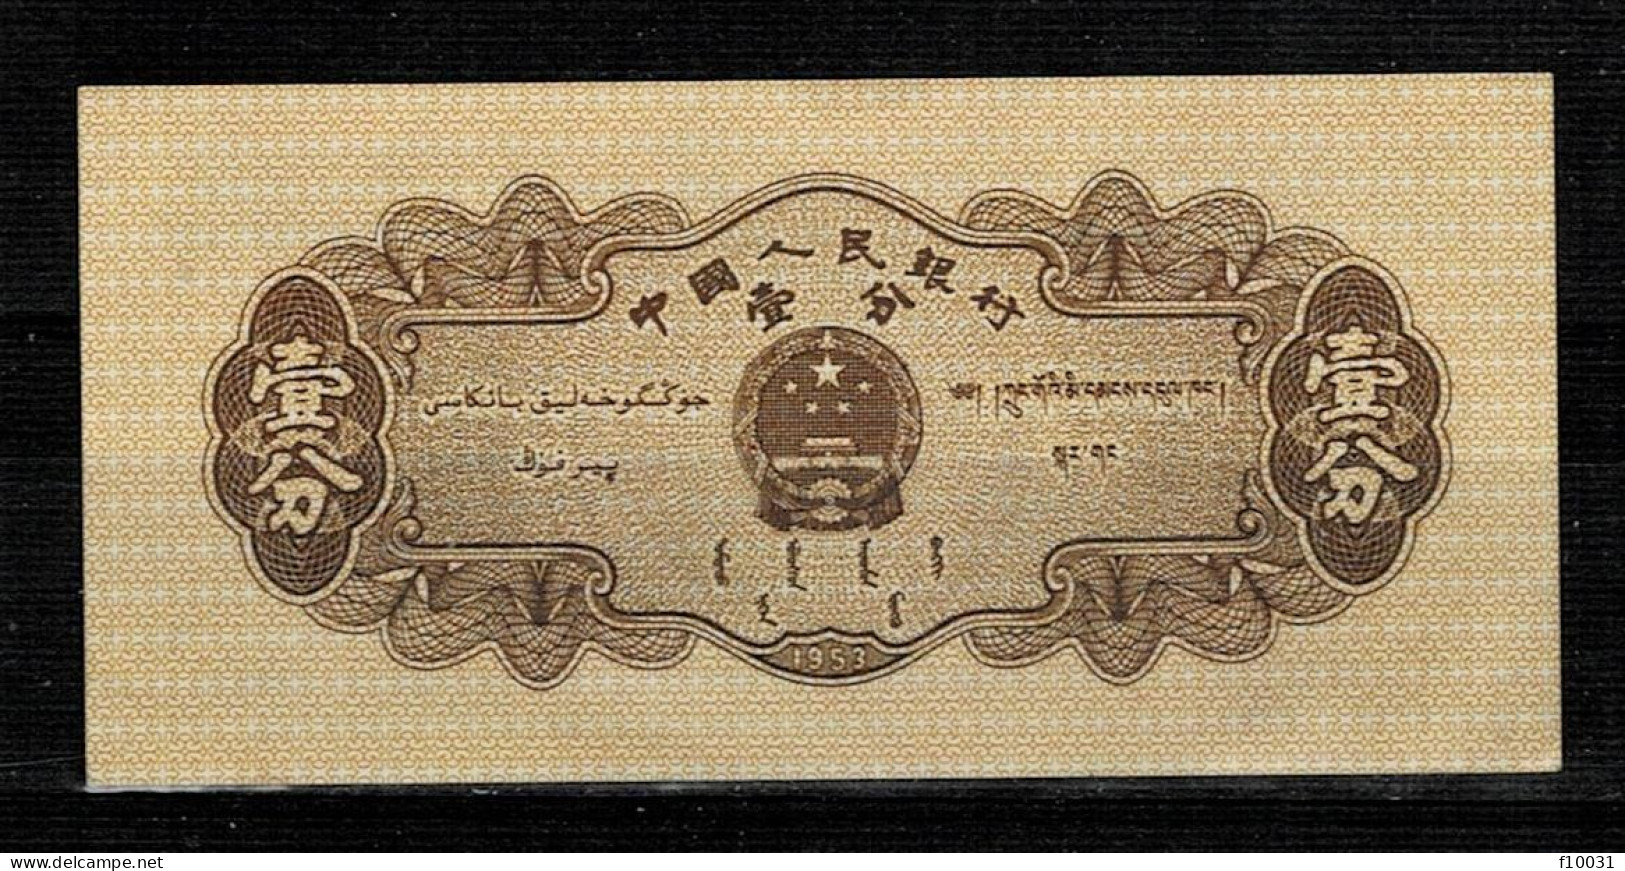 CHINE 1 FEN UNC P 860 - Alla Rinfusa - Banconote